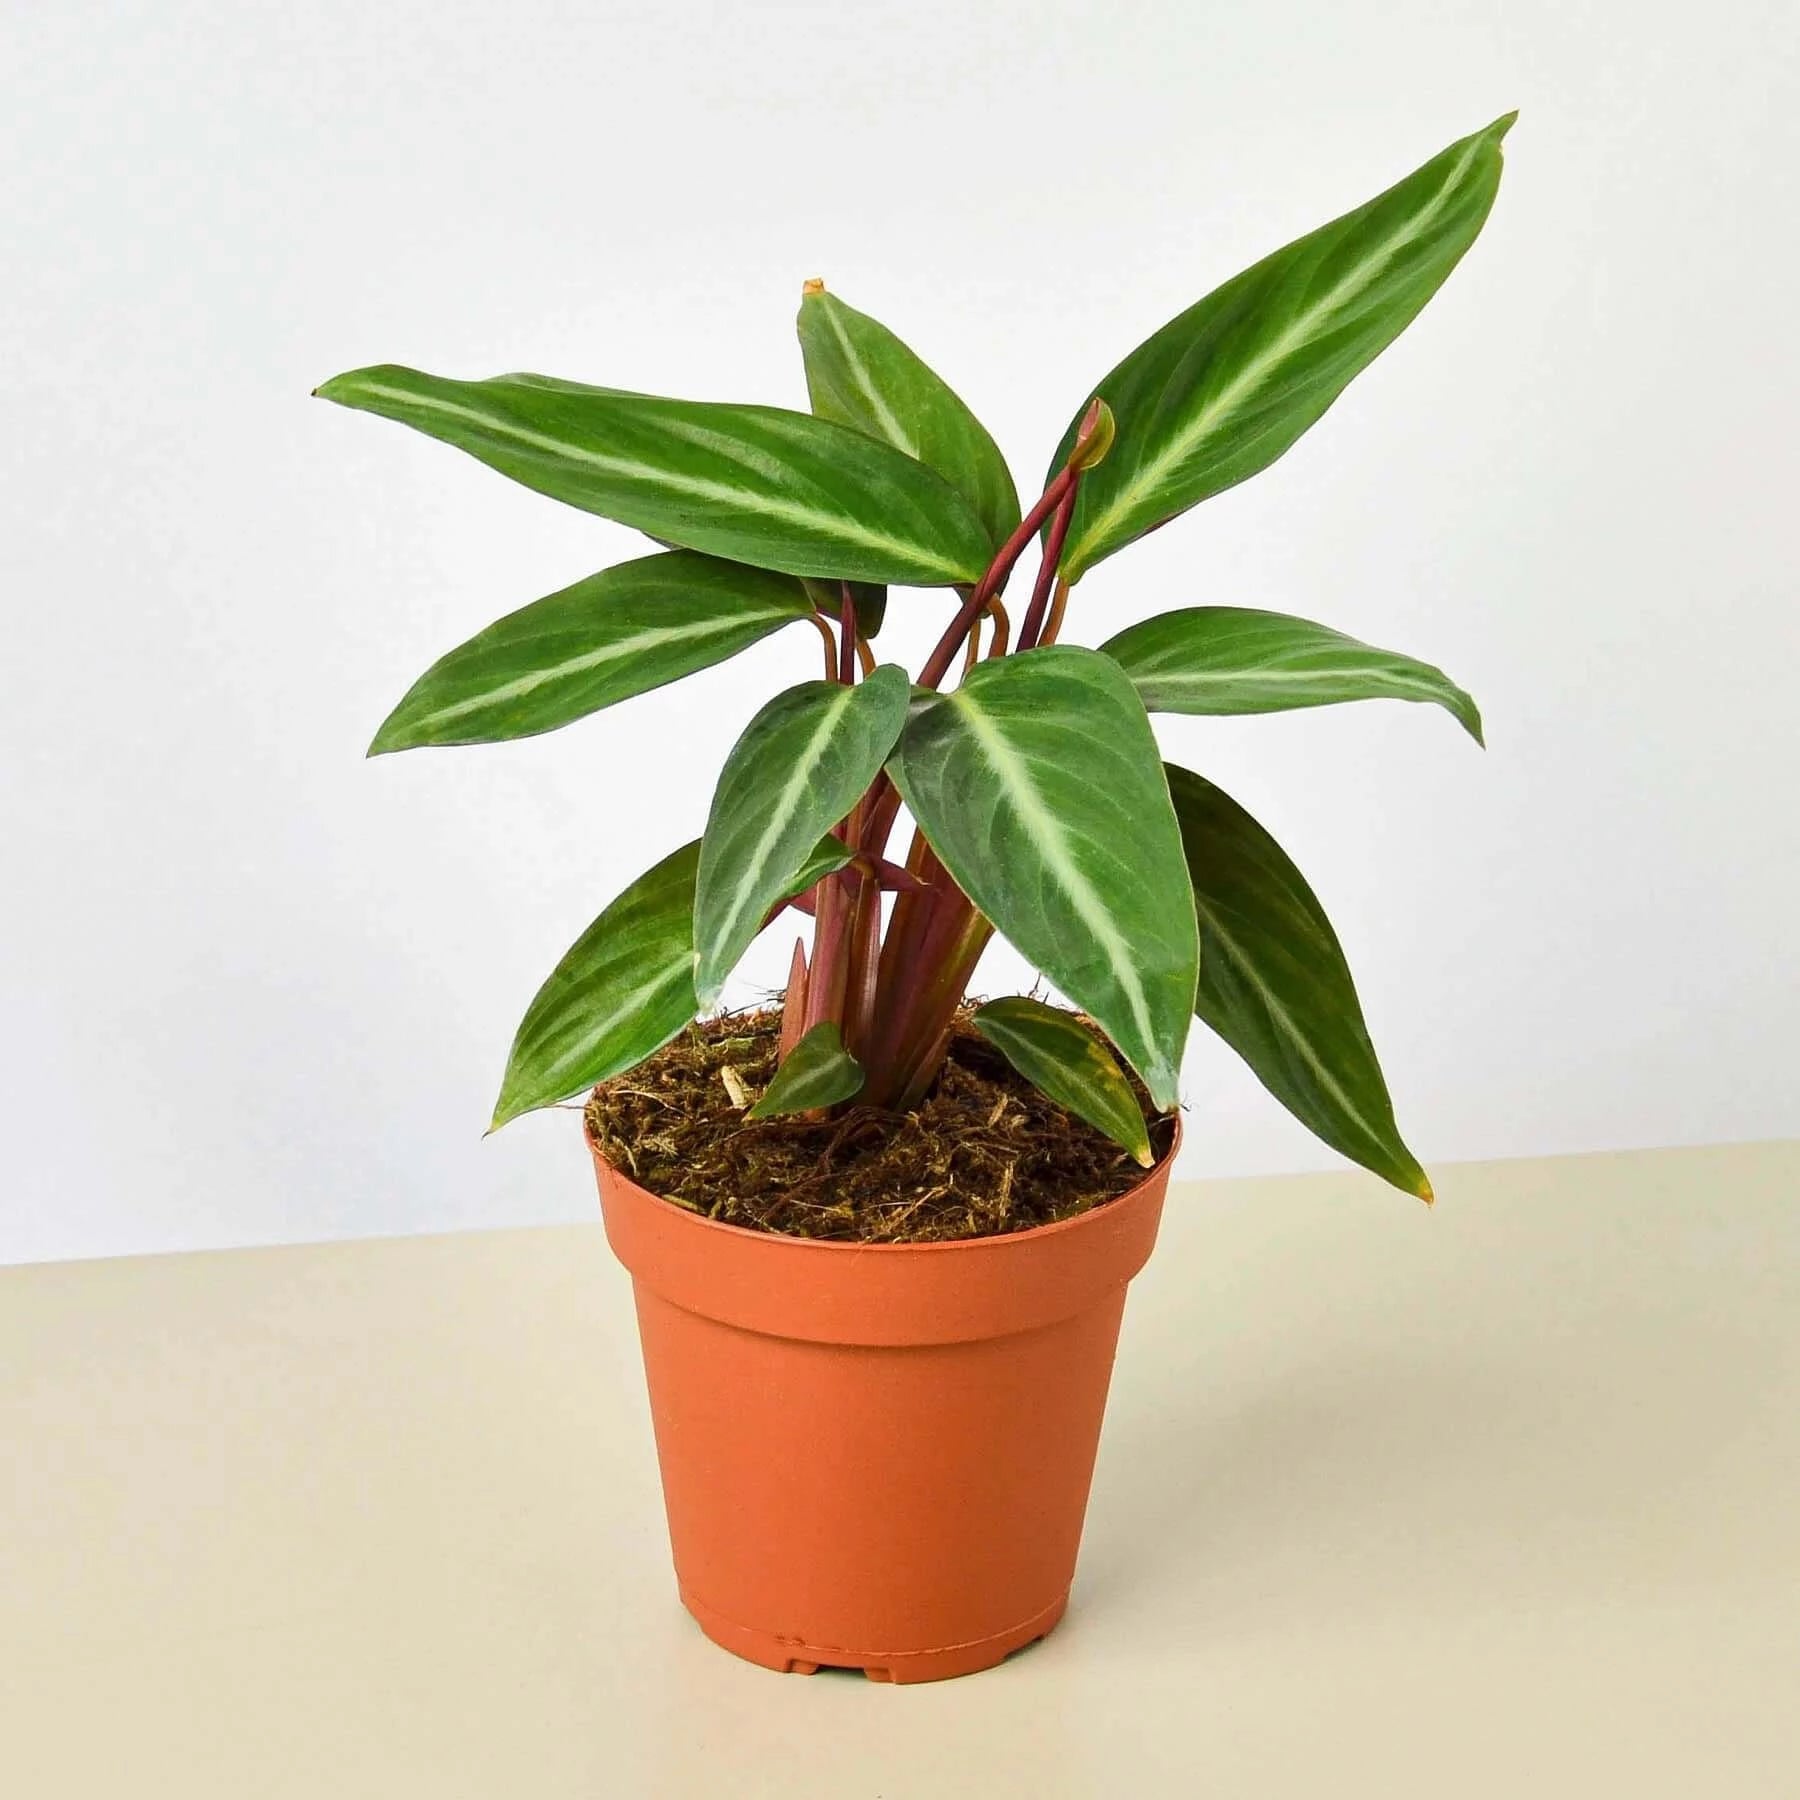 Stromanthe - Sanguinea | Modern house plants that clean the air